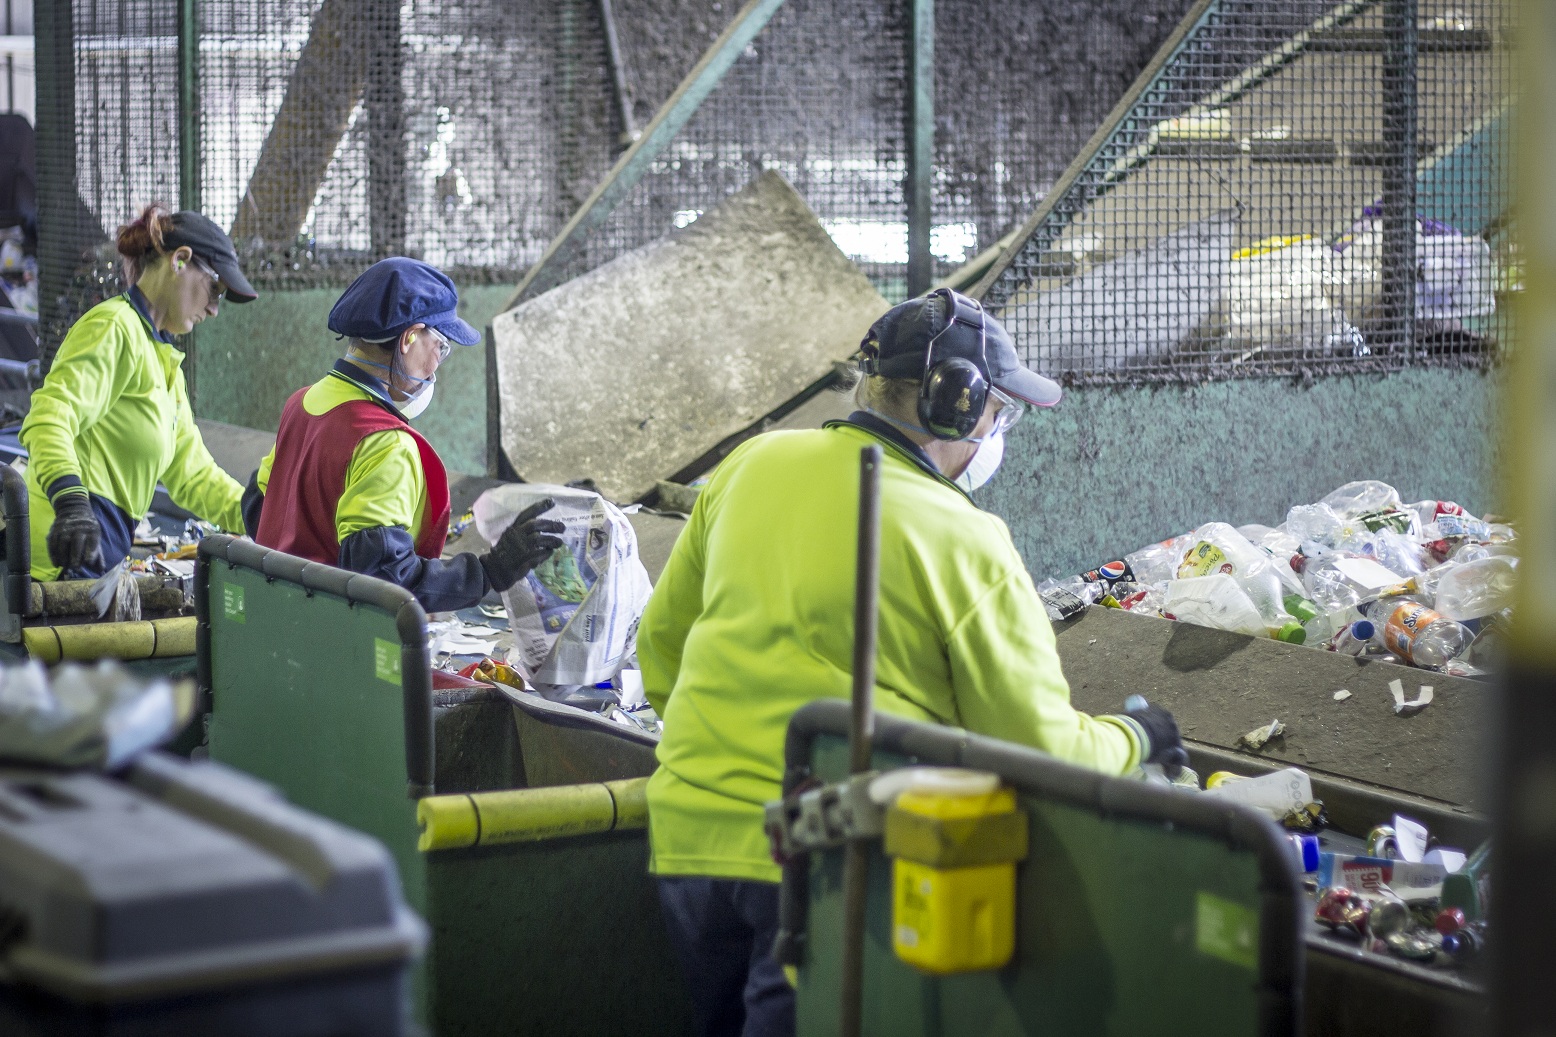 Dangerous goods in kerbside recycling bins